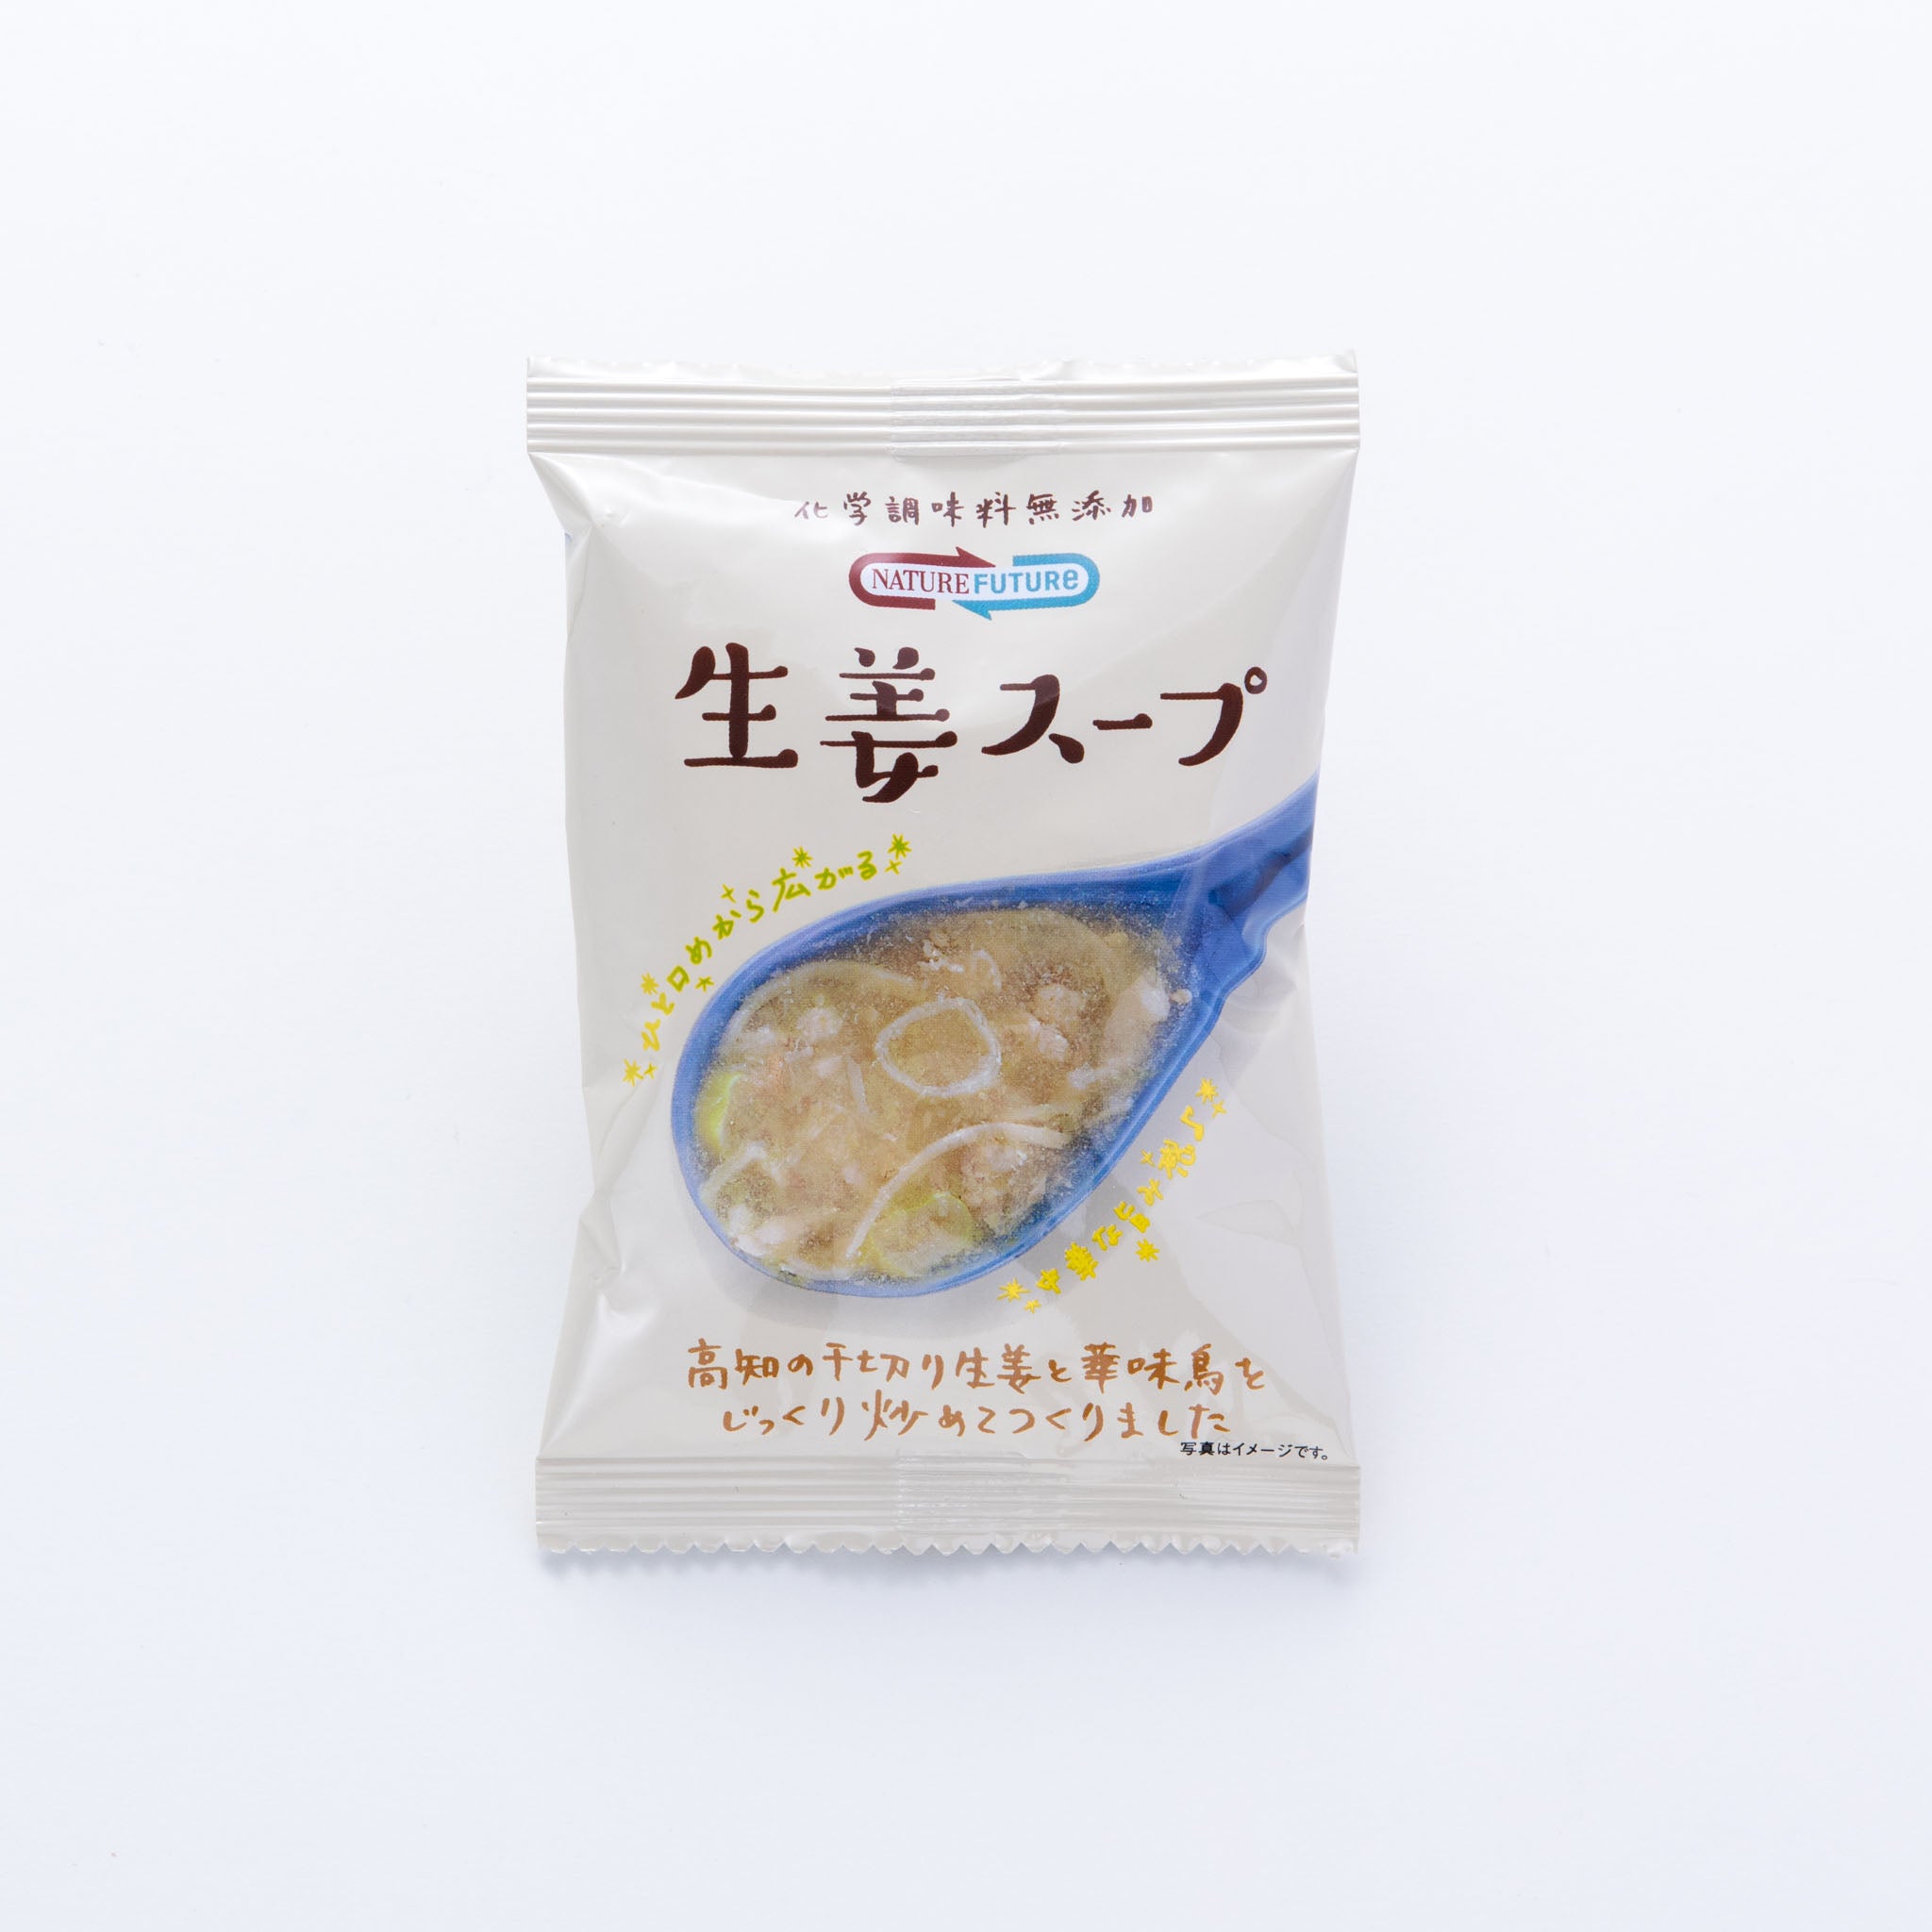 海外最新 コスモス食品 NATURE FUTURe生姜スープ CSF25047X24